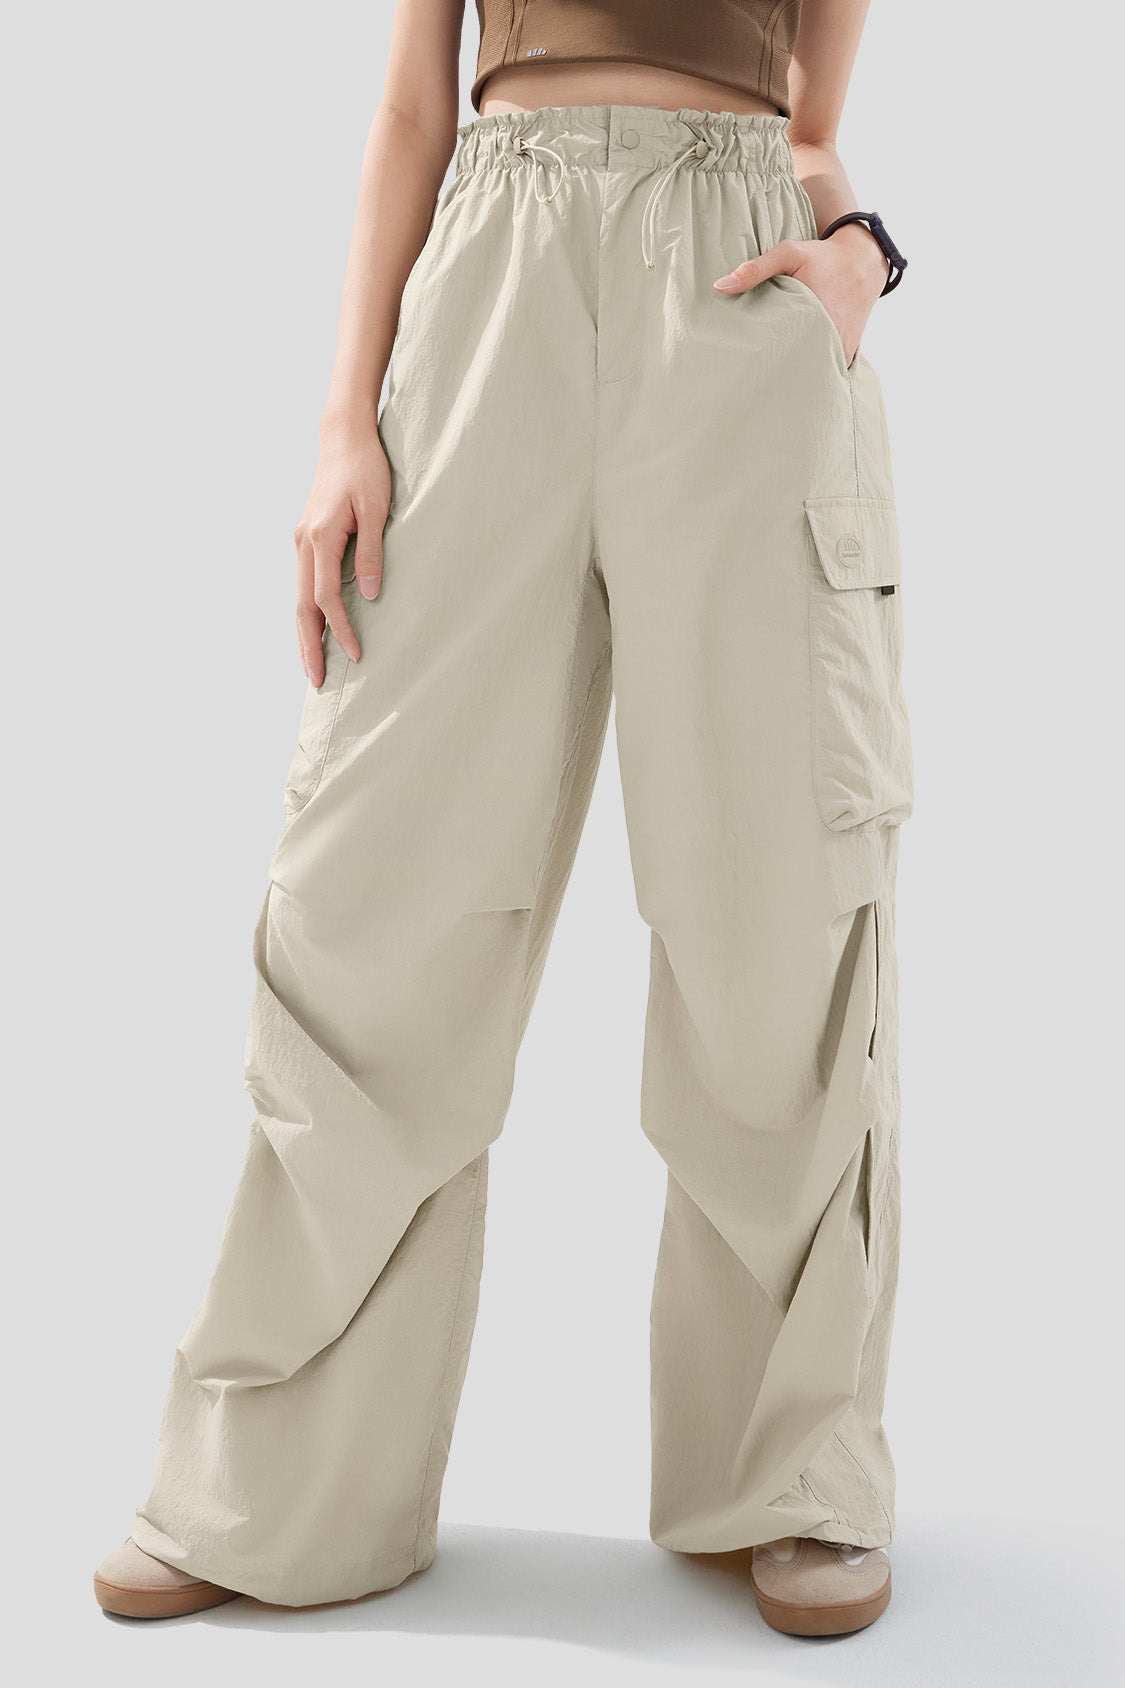 Woolen Pants Women's Harem Pencil Pants Spring High Waist Pockets 3XL Suit  Pants Office Lady Stripde Zipper Trousers